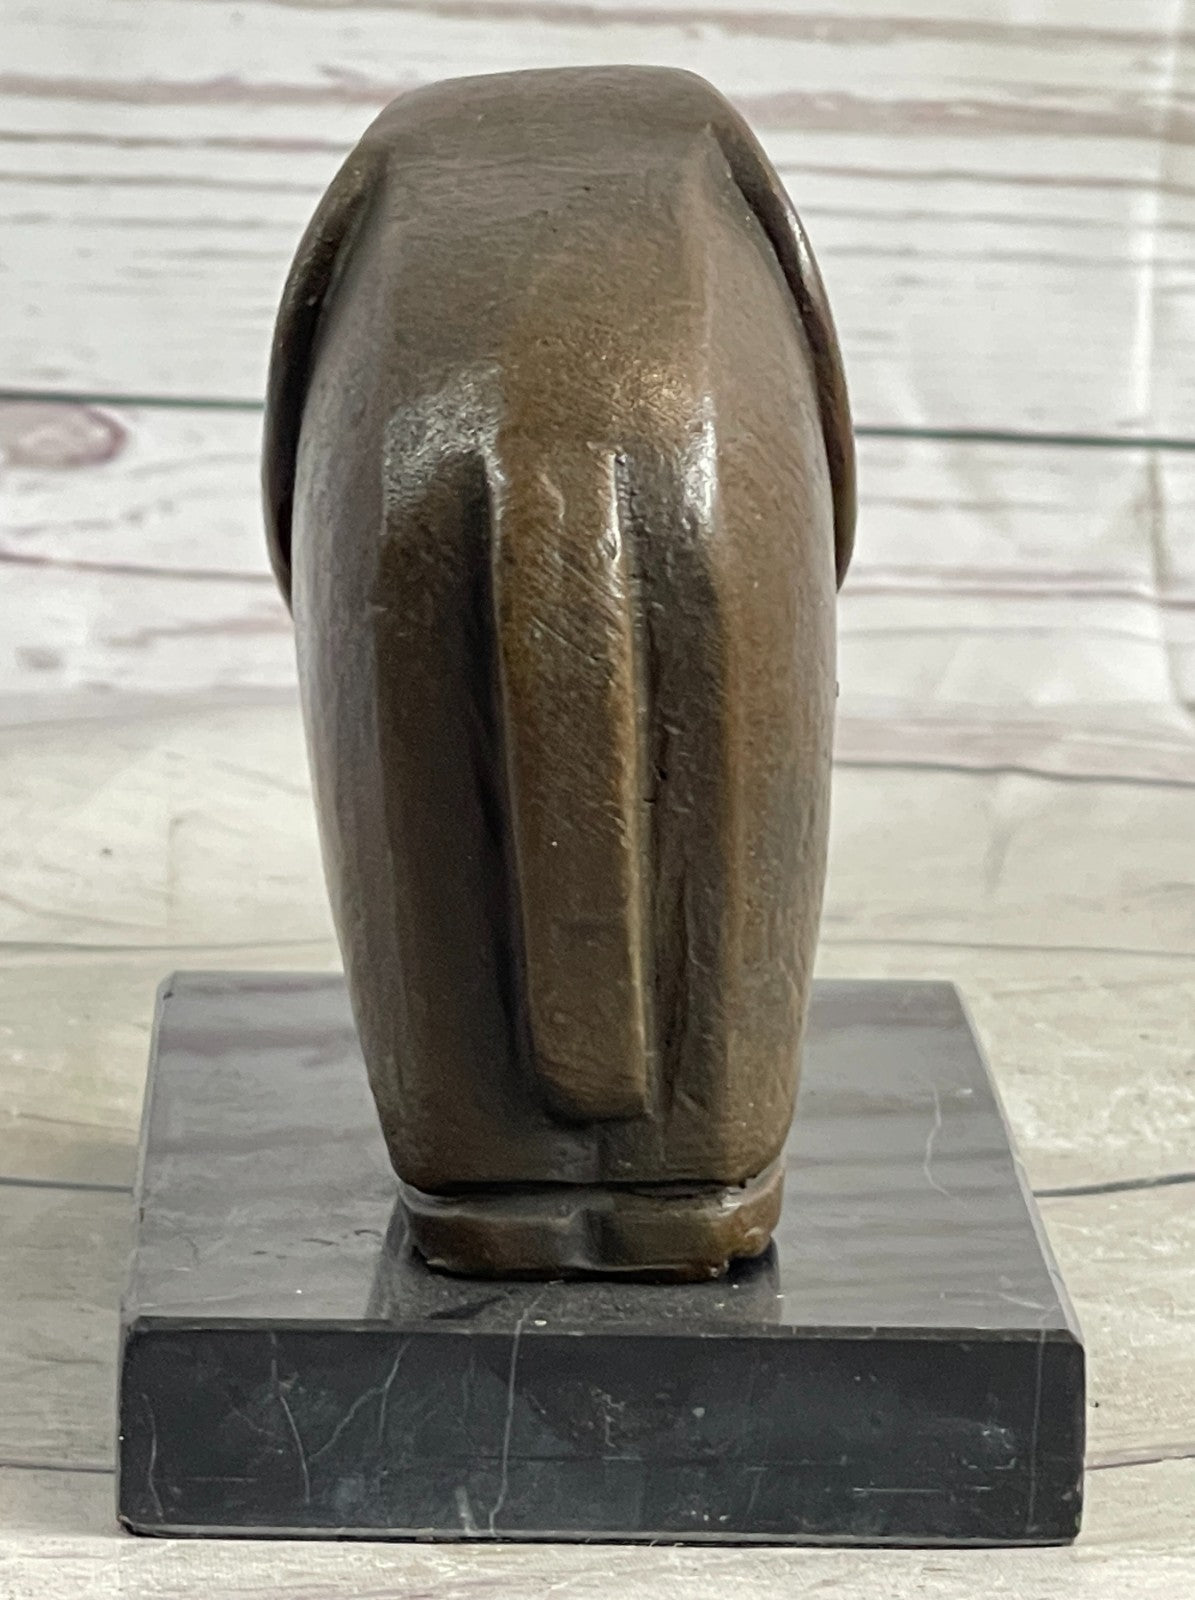 Hot Cast Salvador Dali Abstract Modern Art Elephant Bronze Sculpture Figurine NR